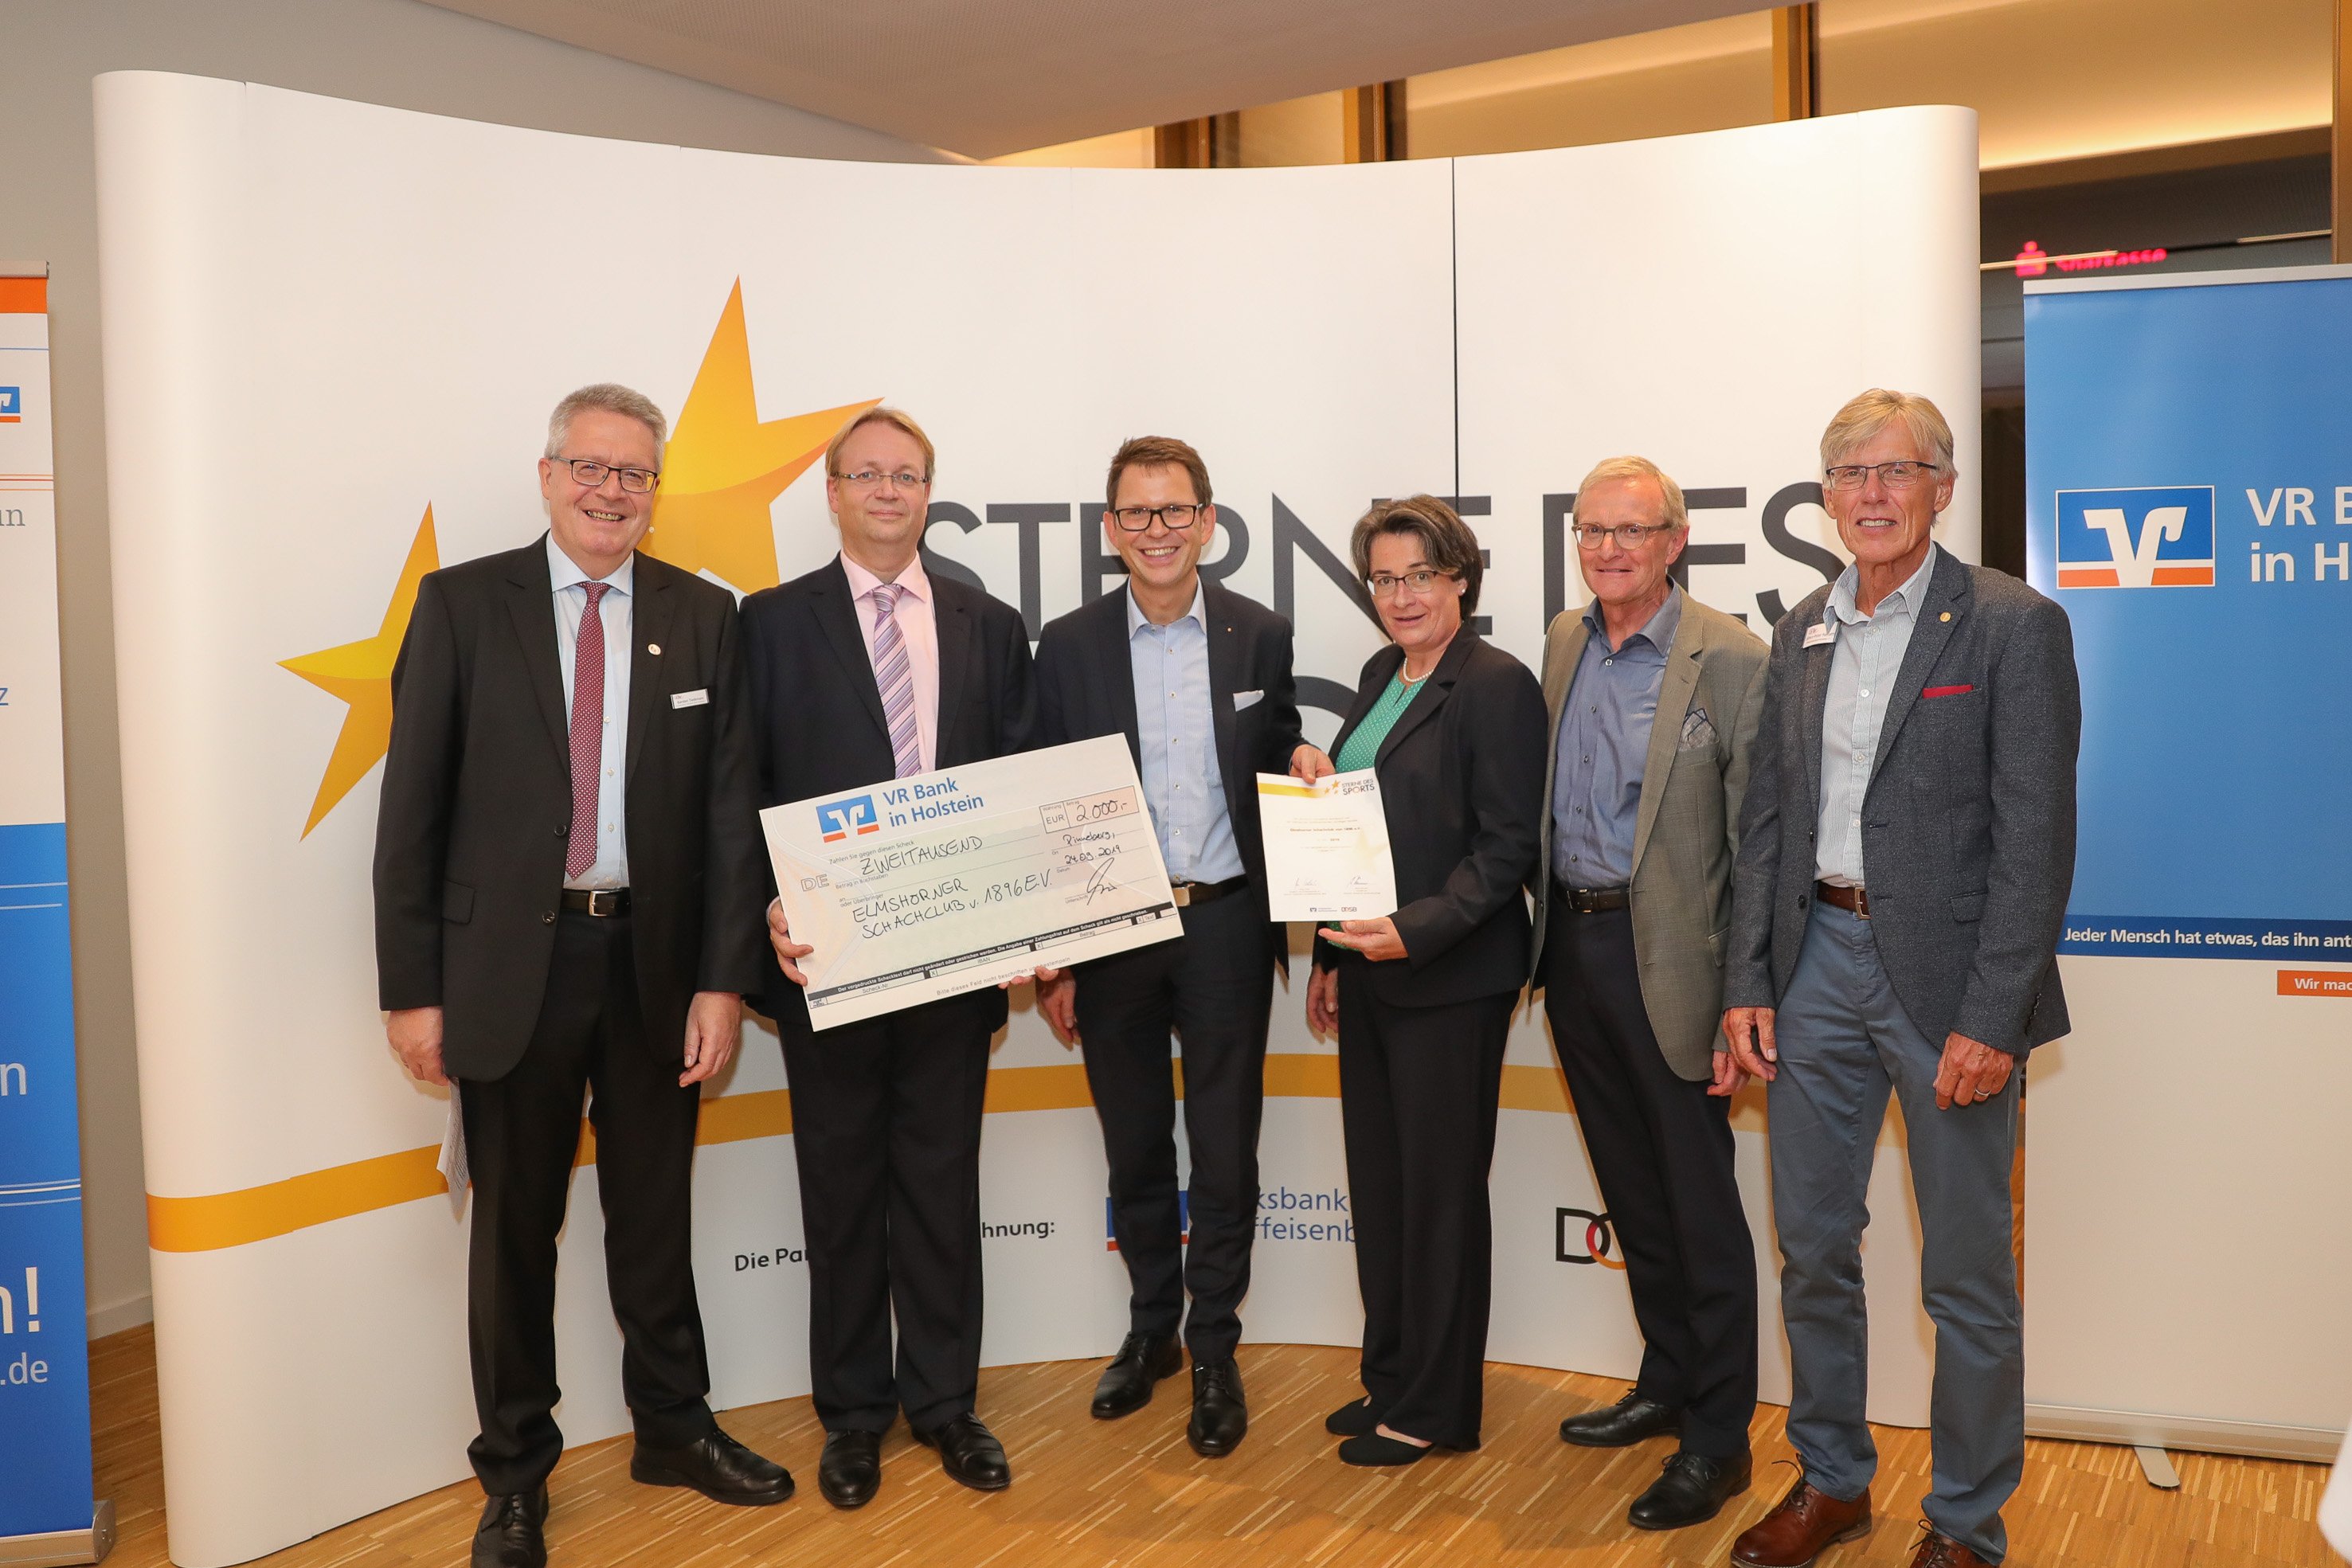 Der zweite Sieger, Heiko Spaan vom Elmshorner Schachclub freut sich über 2.000 EURO. Foto: VR Bank in Holstein